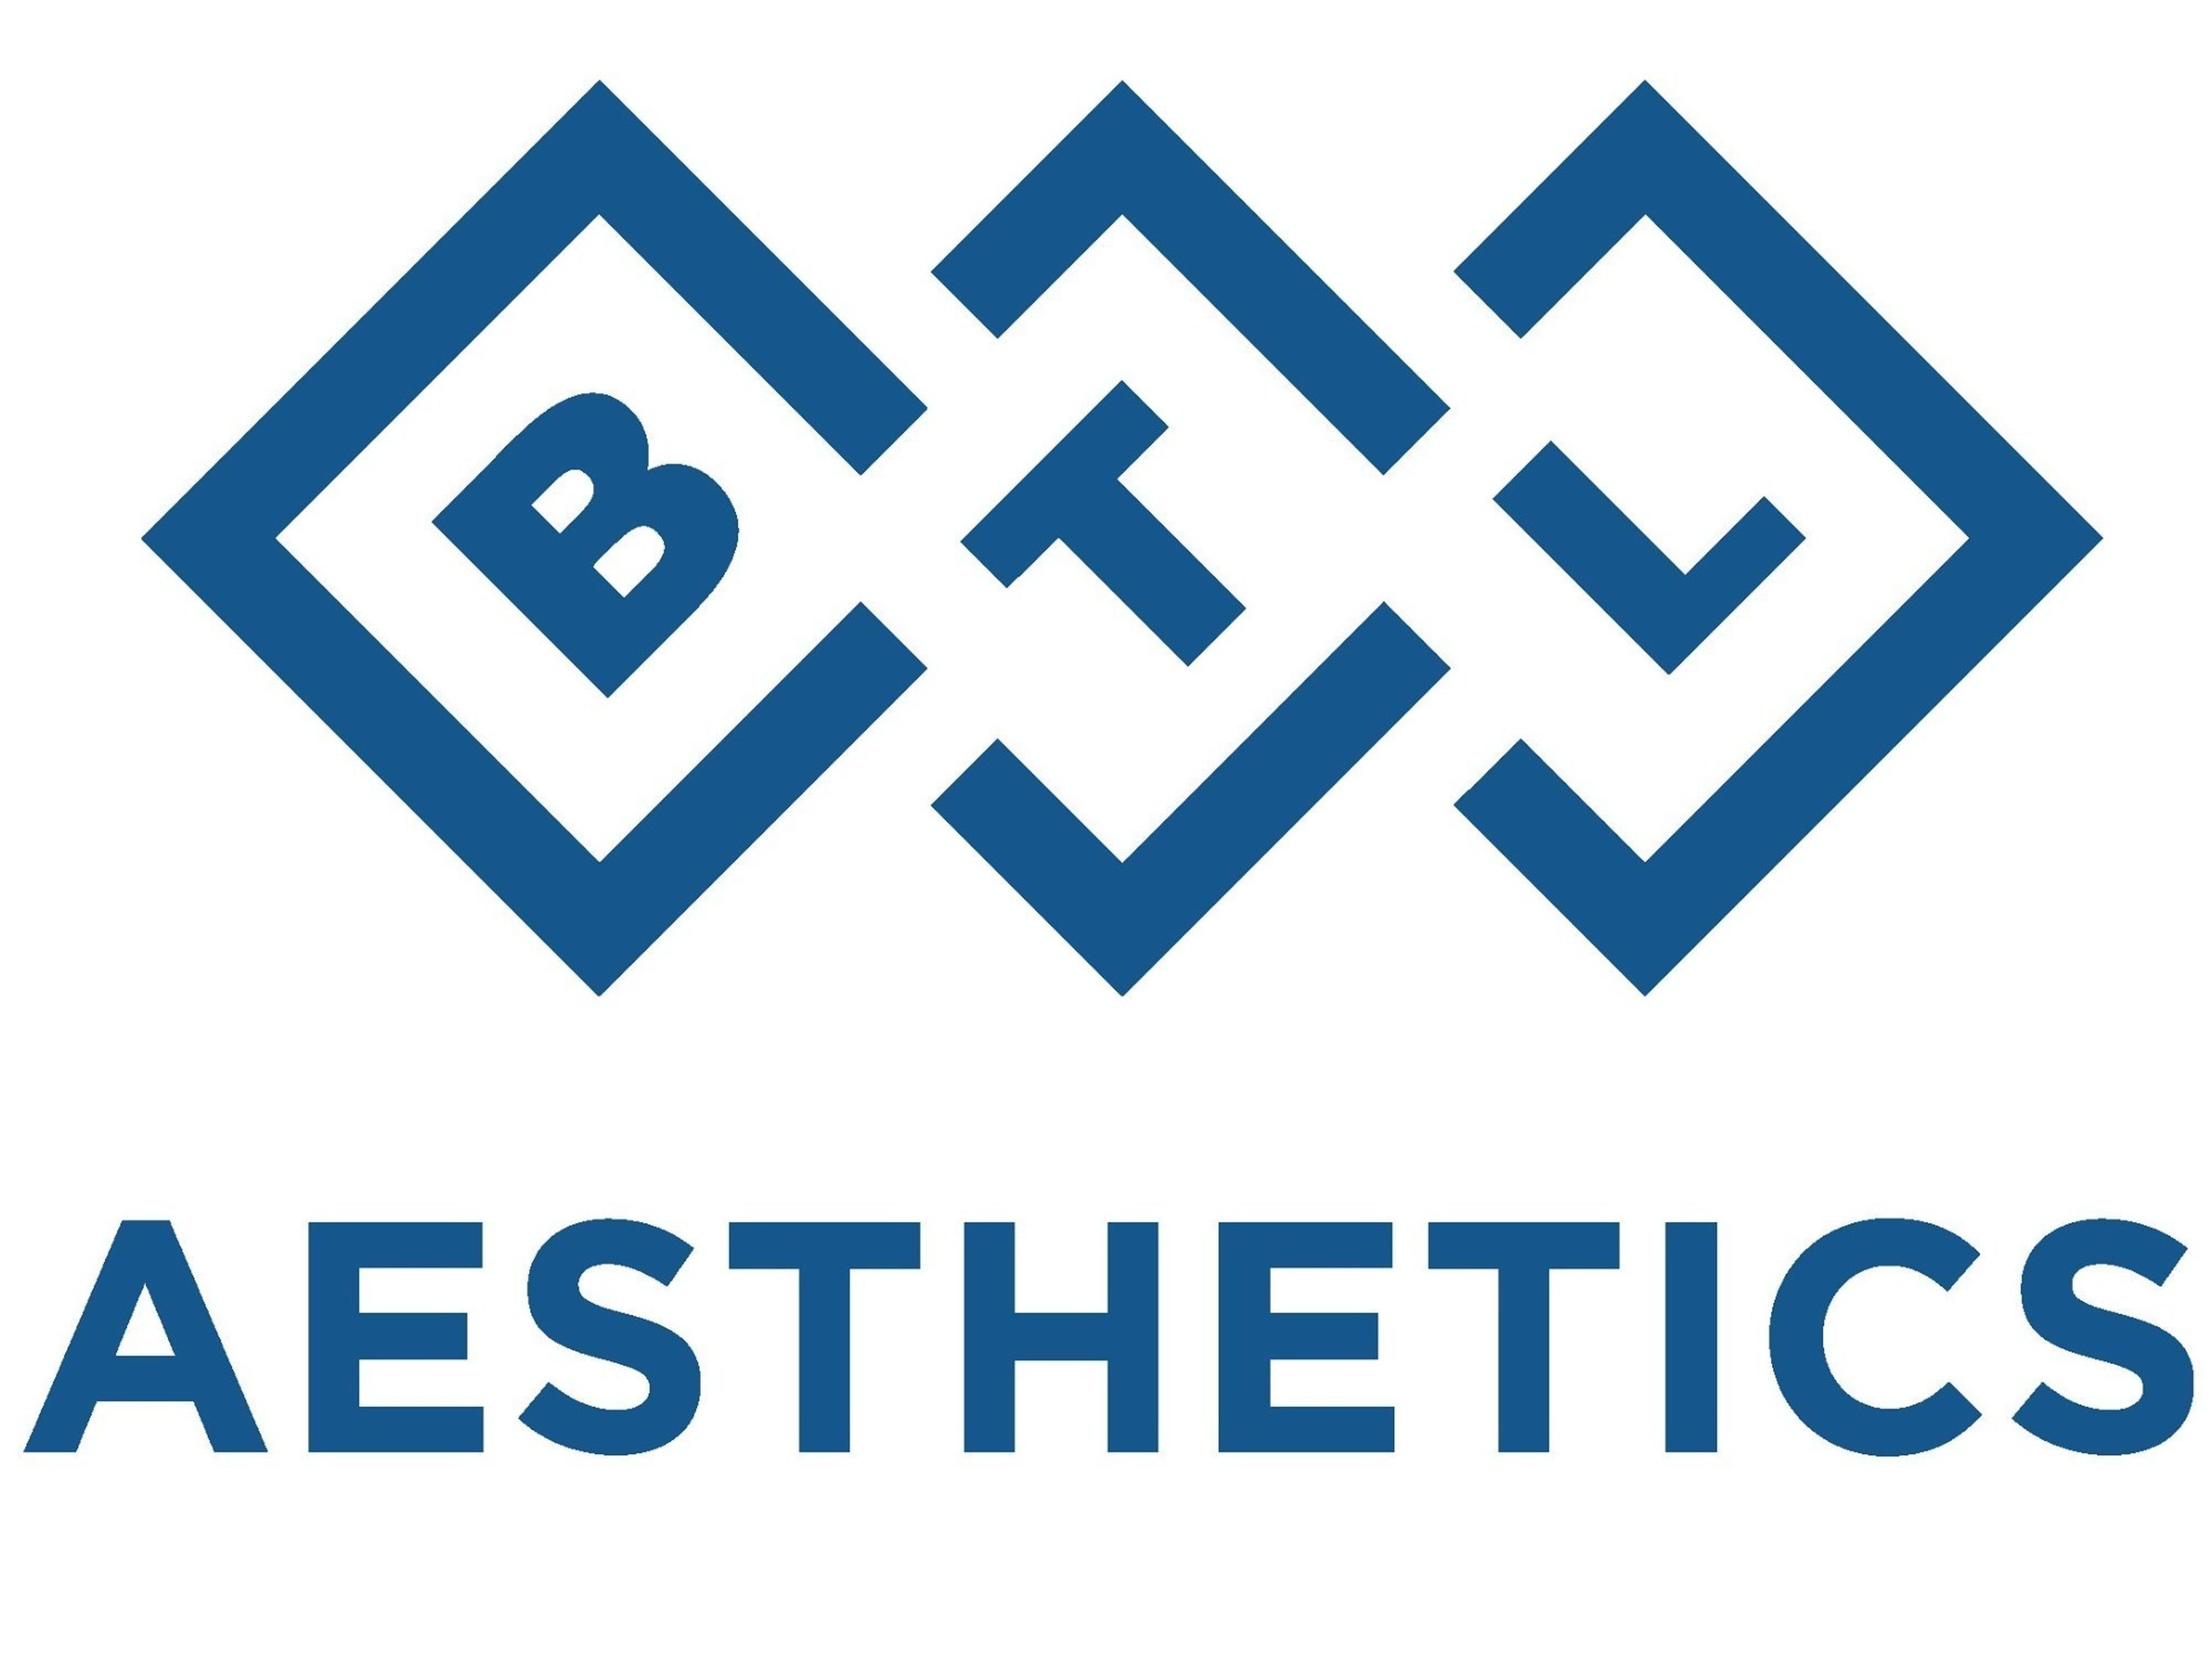 BTL Aesthetics Logo